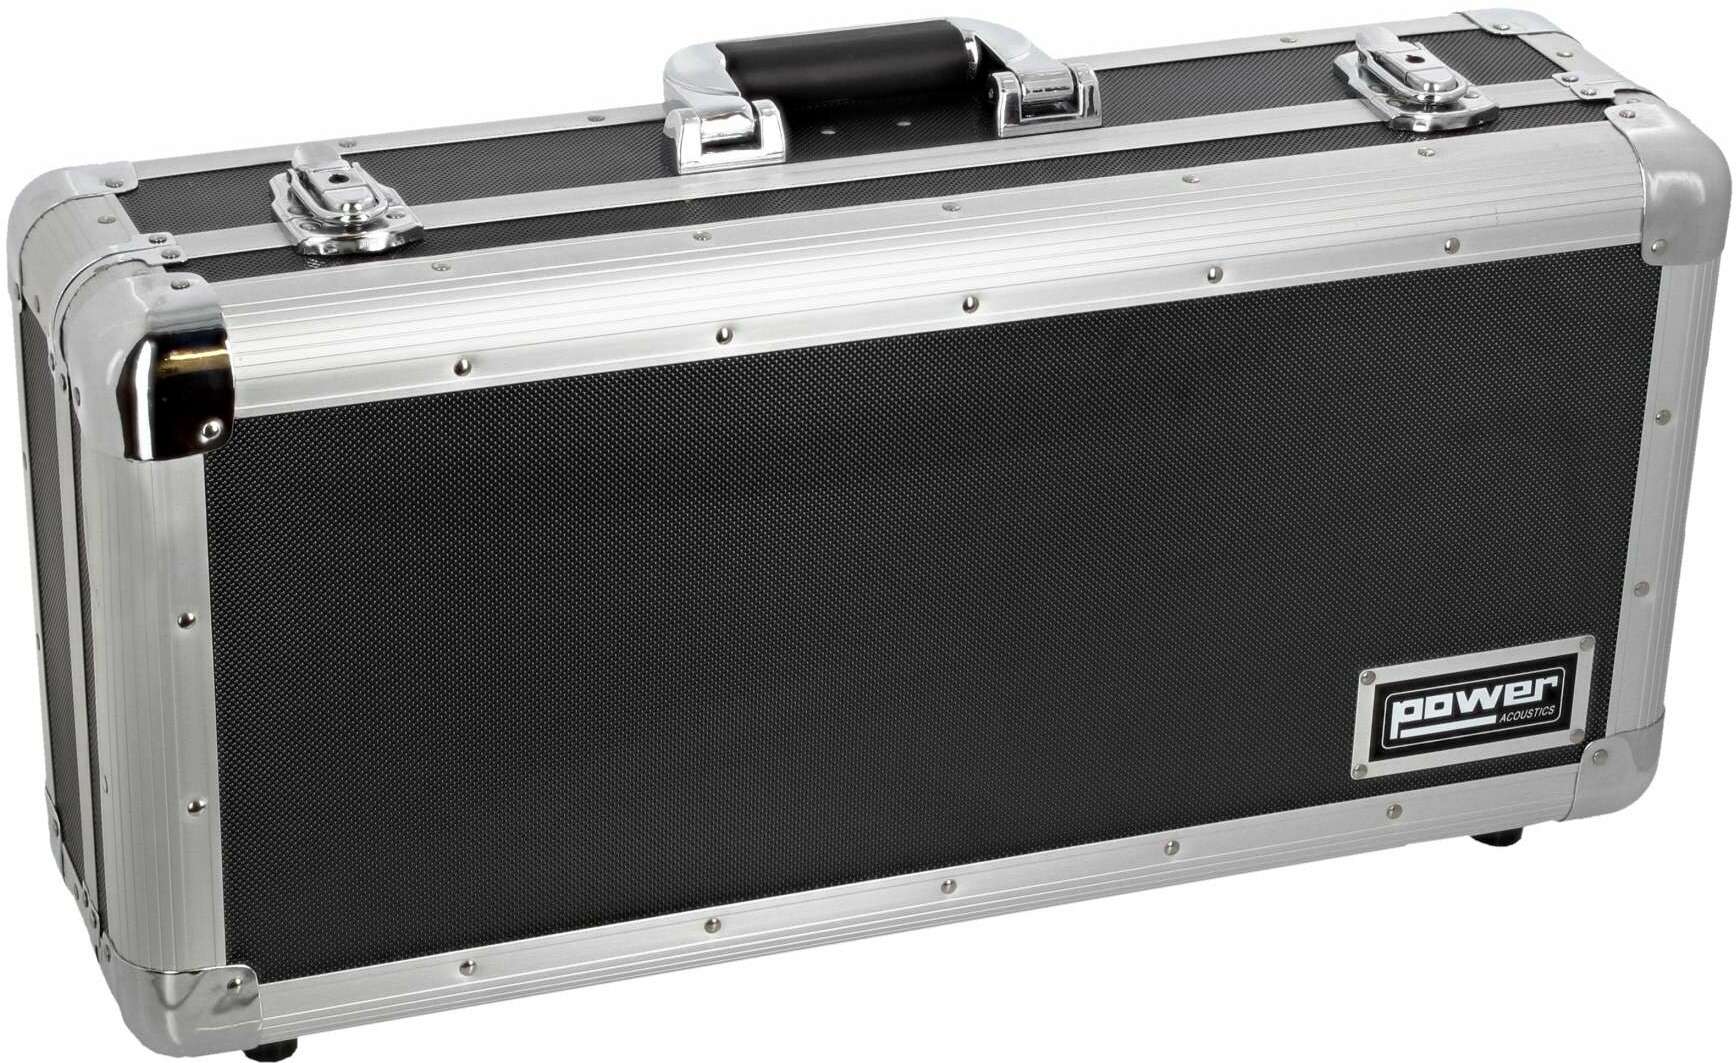 Power Acoustics Fl Cd Case 100bl - DJ flightcase - Main picture